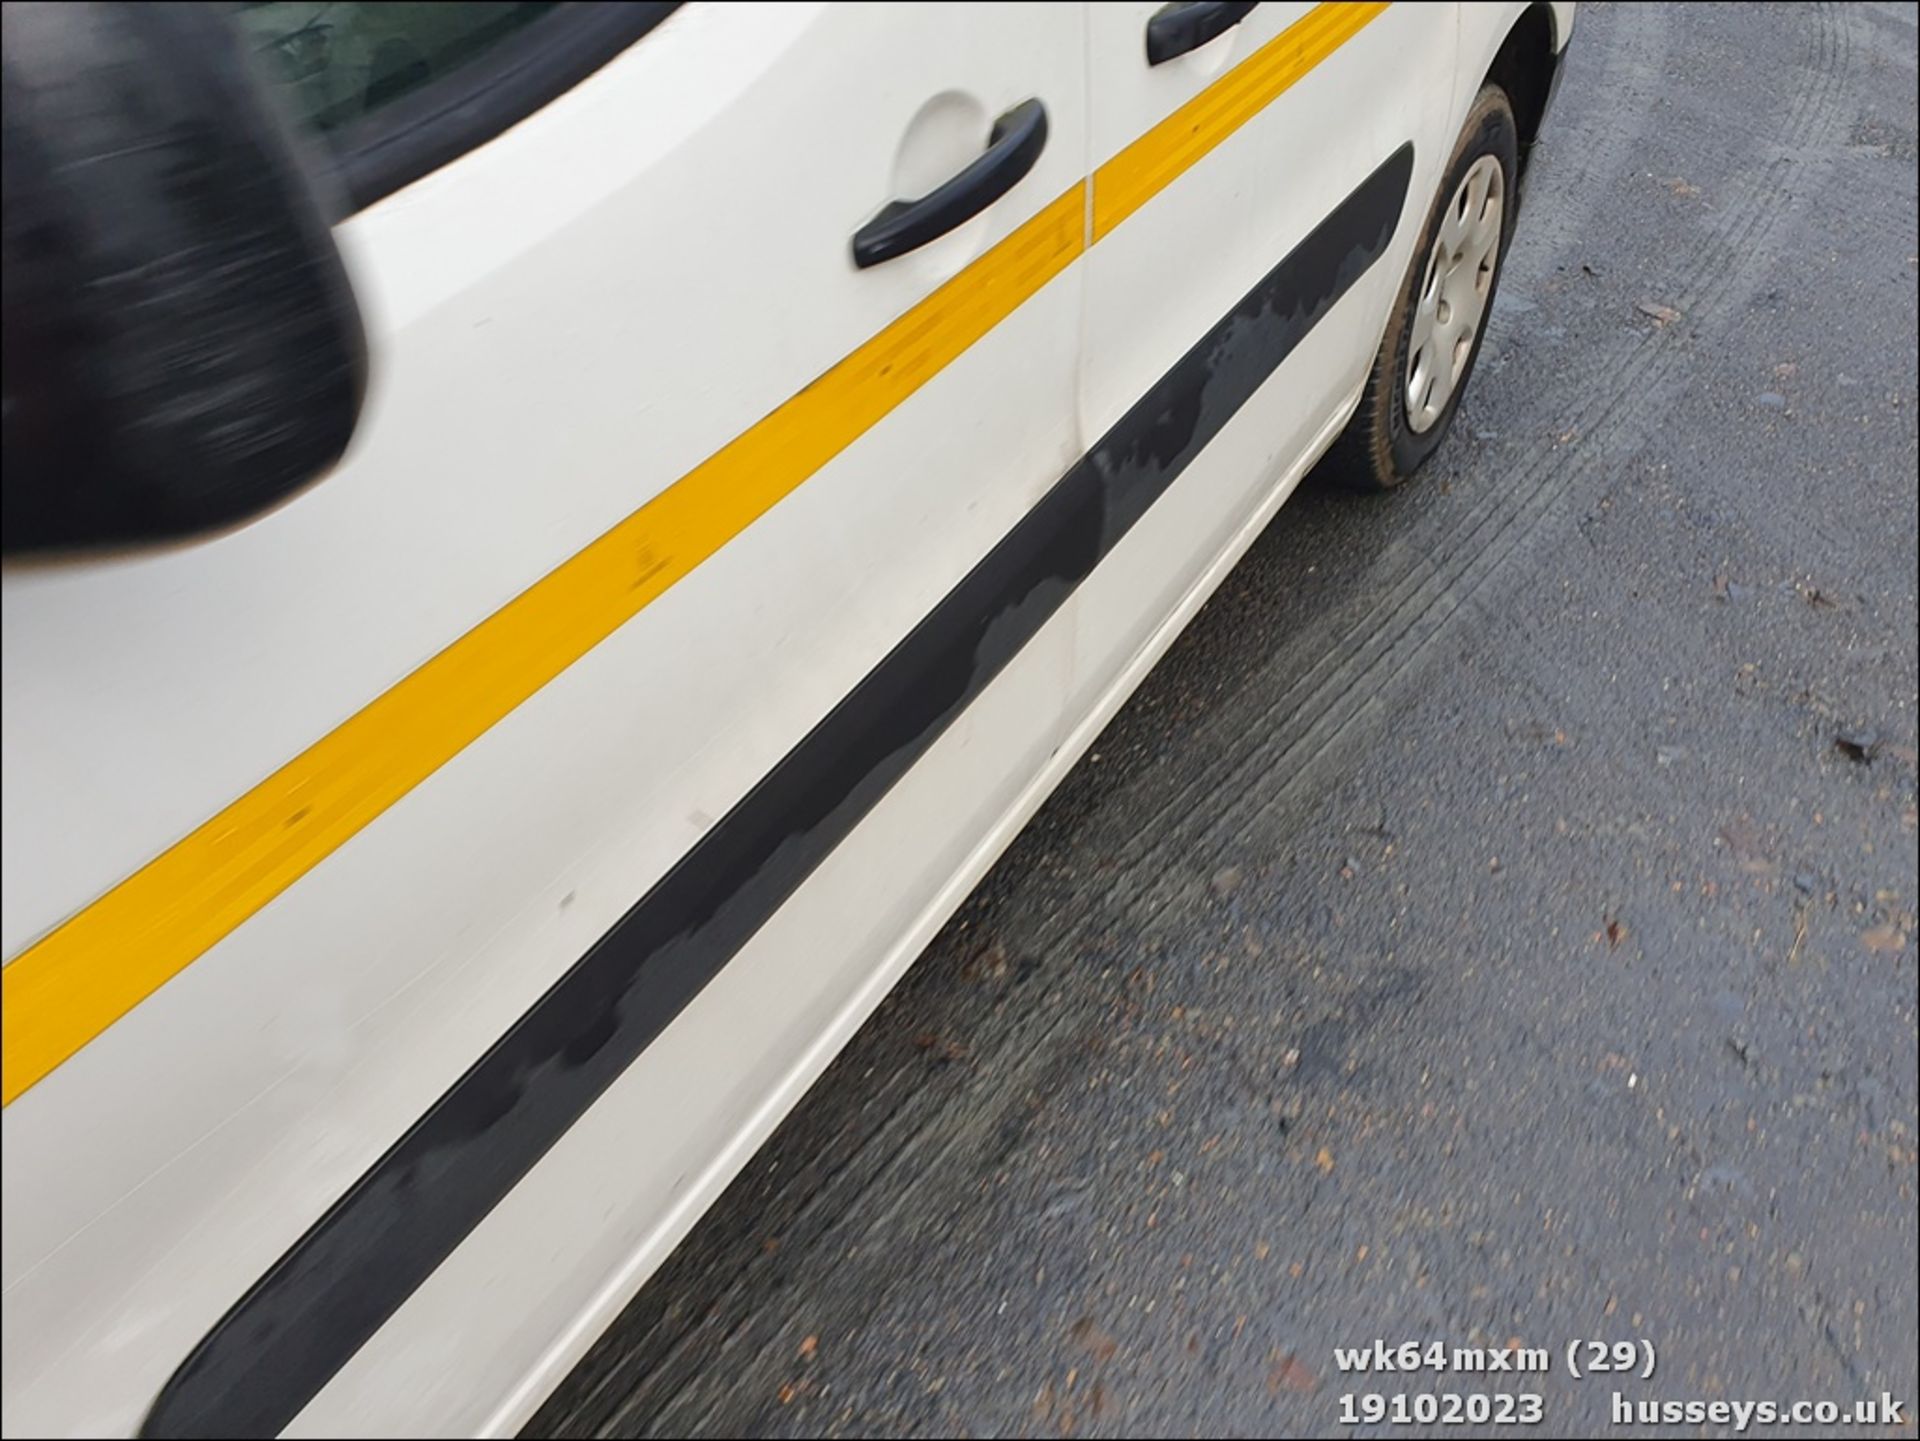 14/64 PEUGEOT PARTNER 850 SE L1 HDI - 1560cc 5dr Van (White, 72k) - Image 30 of 40